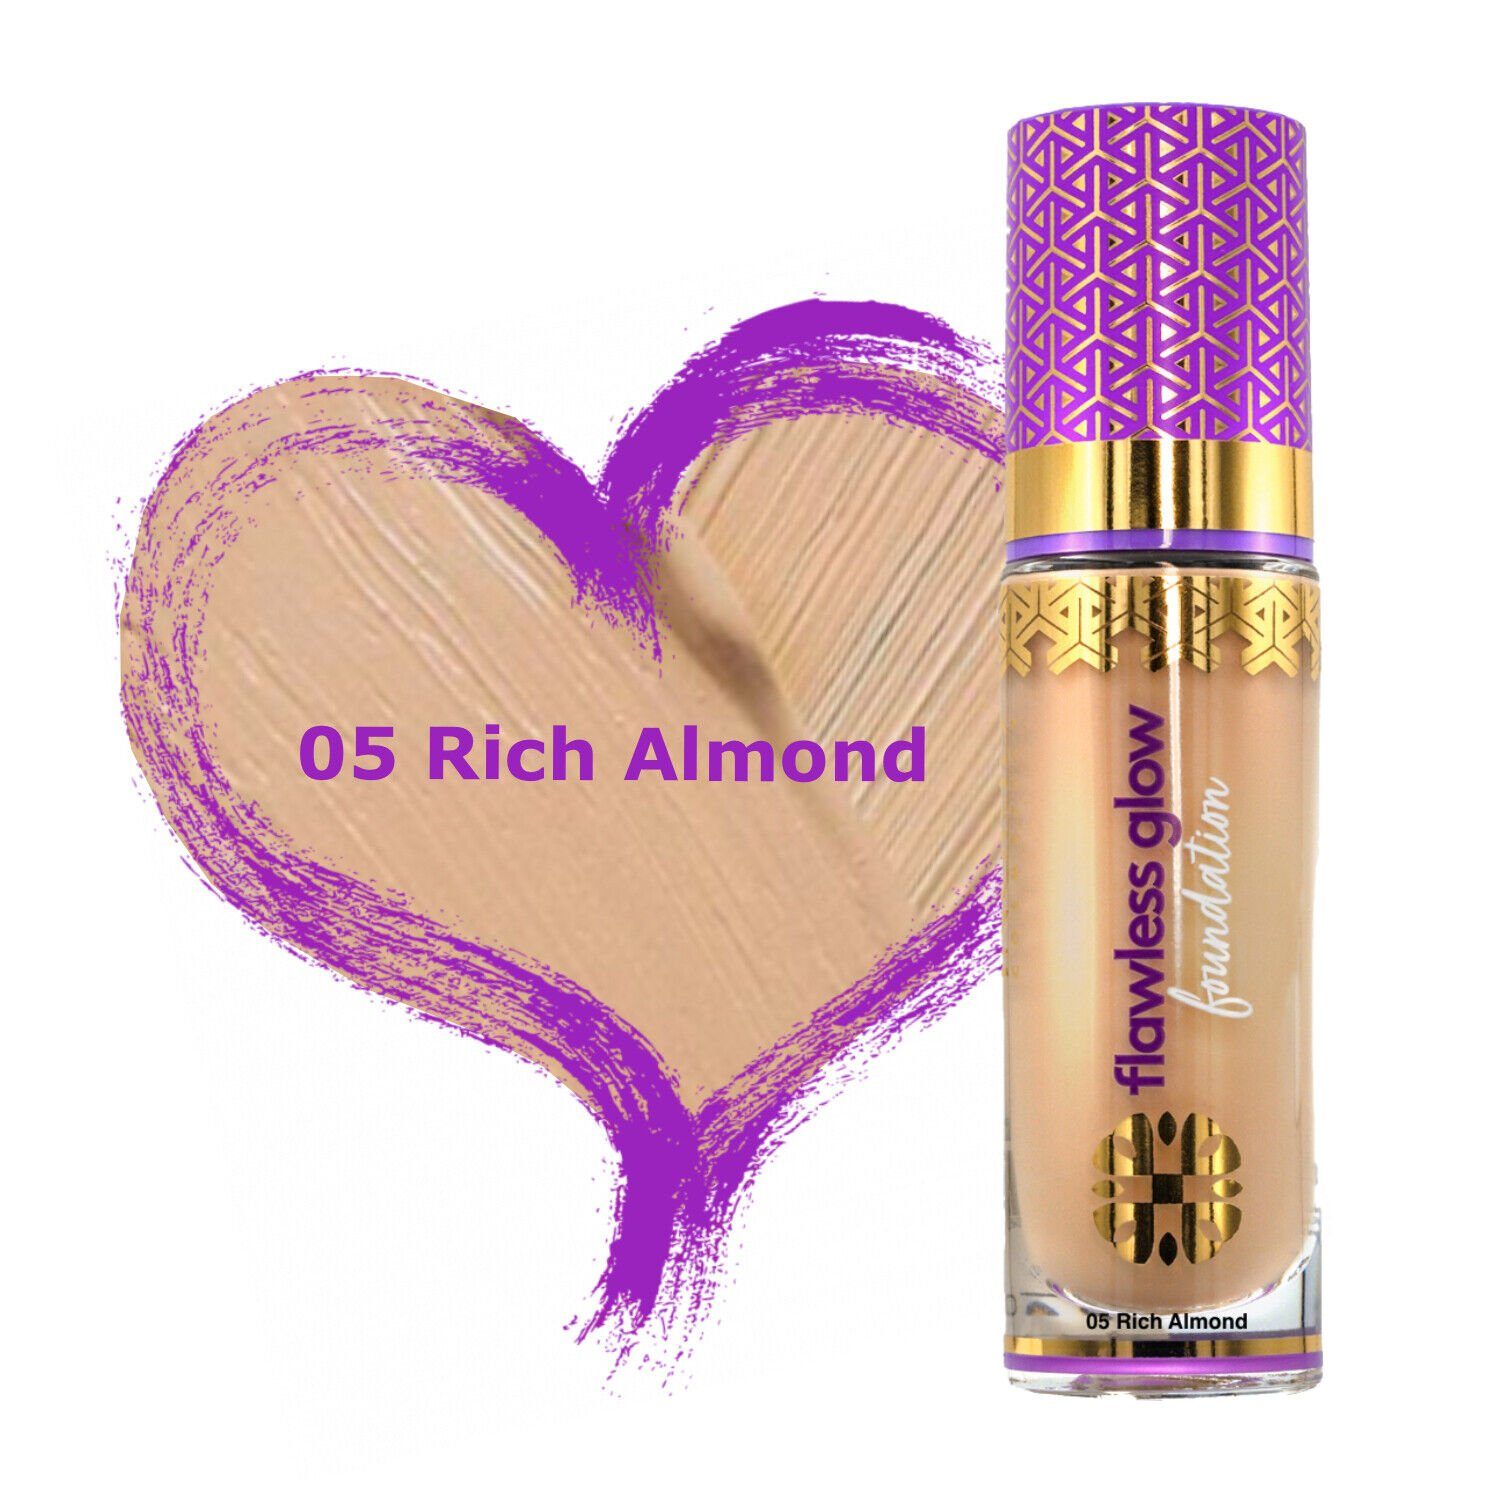 Foundation Rich Foundation Cream 05 gleichmäßig Vollarè Make-Up BB feuchtigkeitsspendend Almond Hyaluronsäure mit Cosmetics